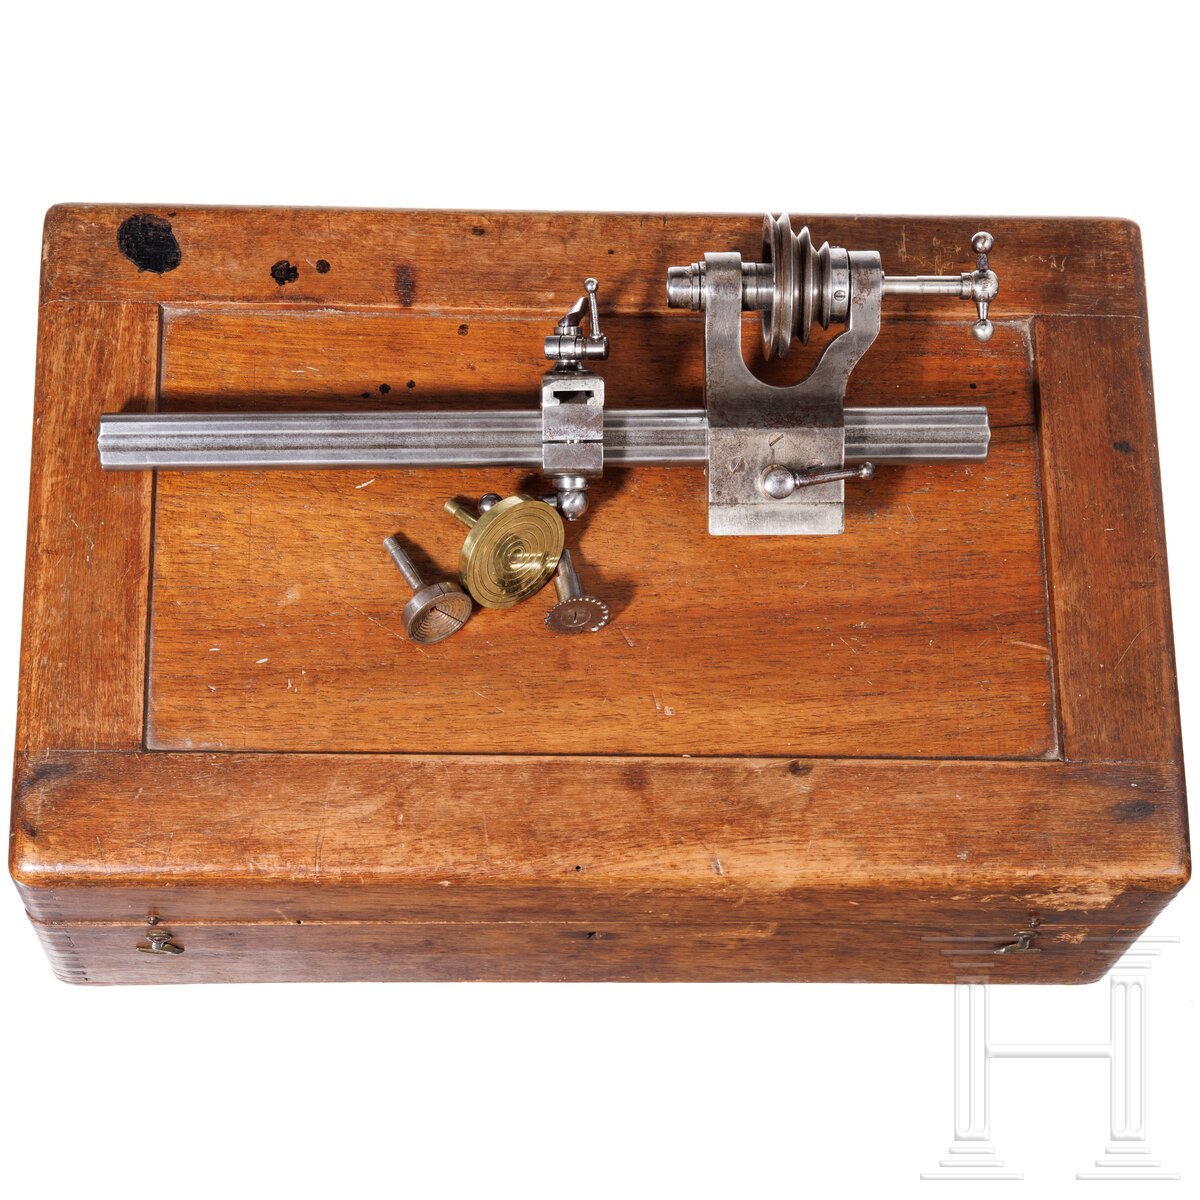 Lorch-Drehmaschine für Uhrmacher im Kasten mit Zubehör, deutsch, wohl um 1900 - Image 3 of 3